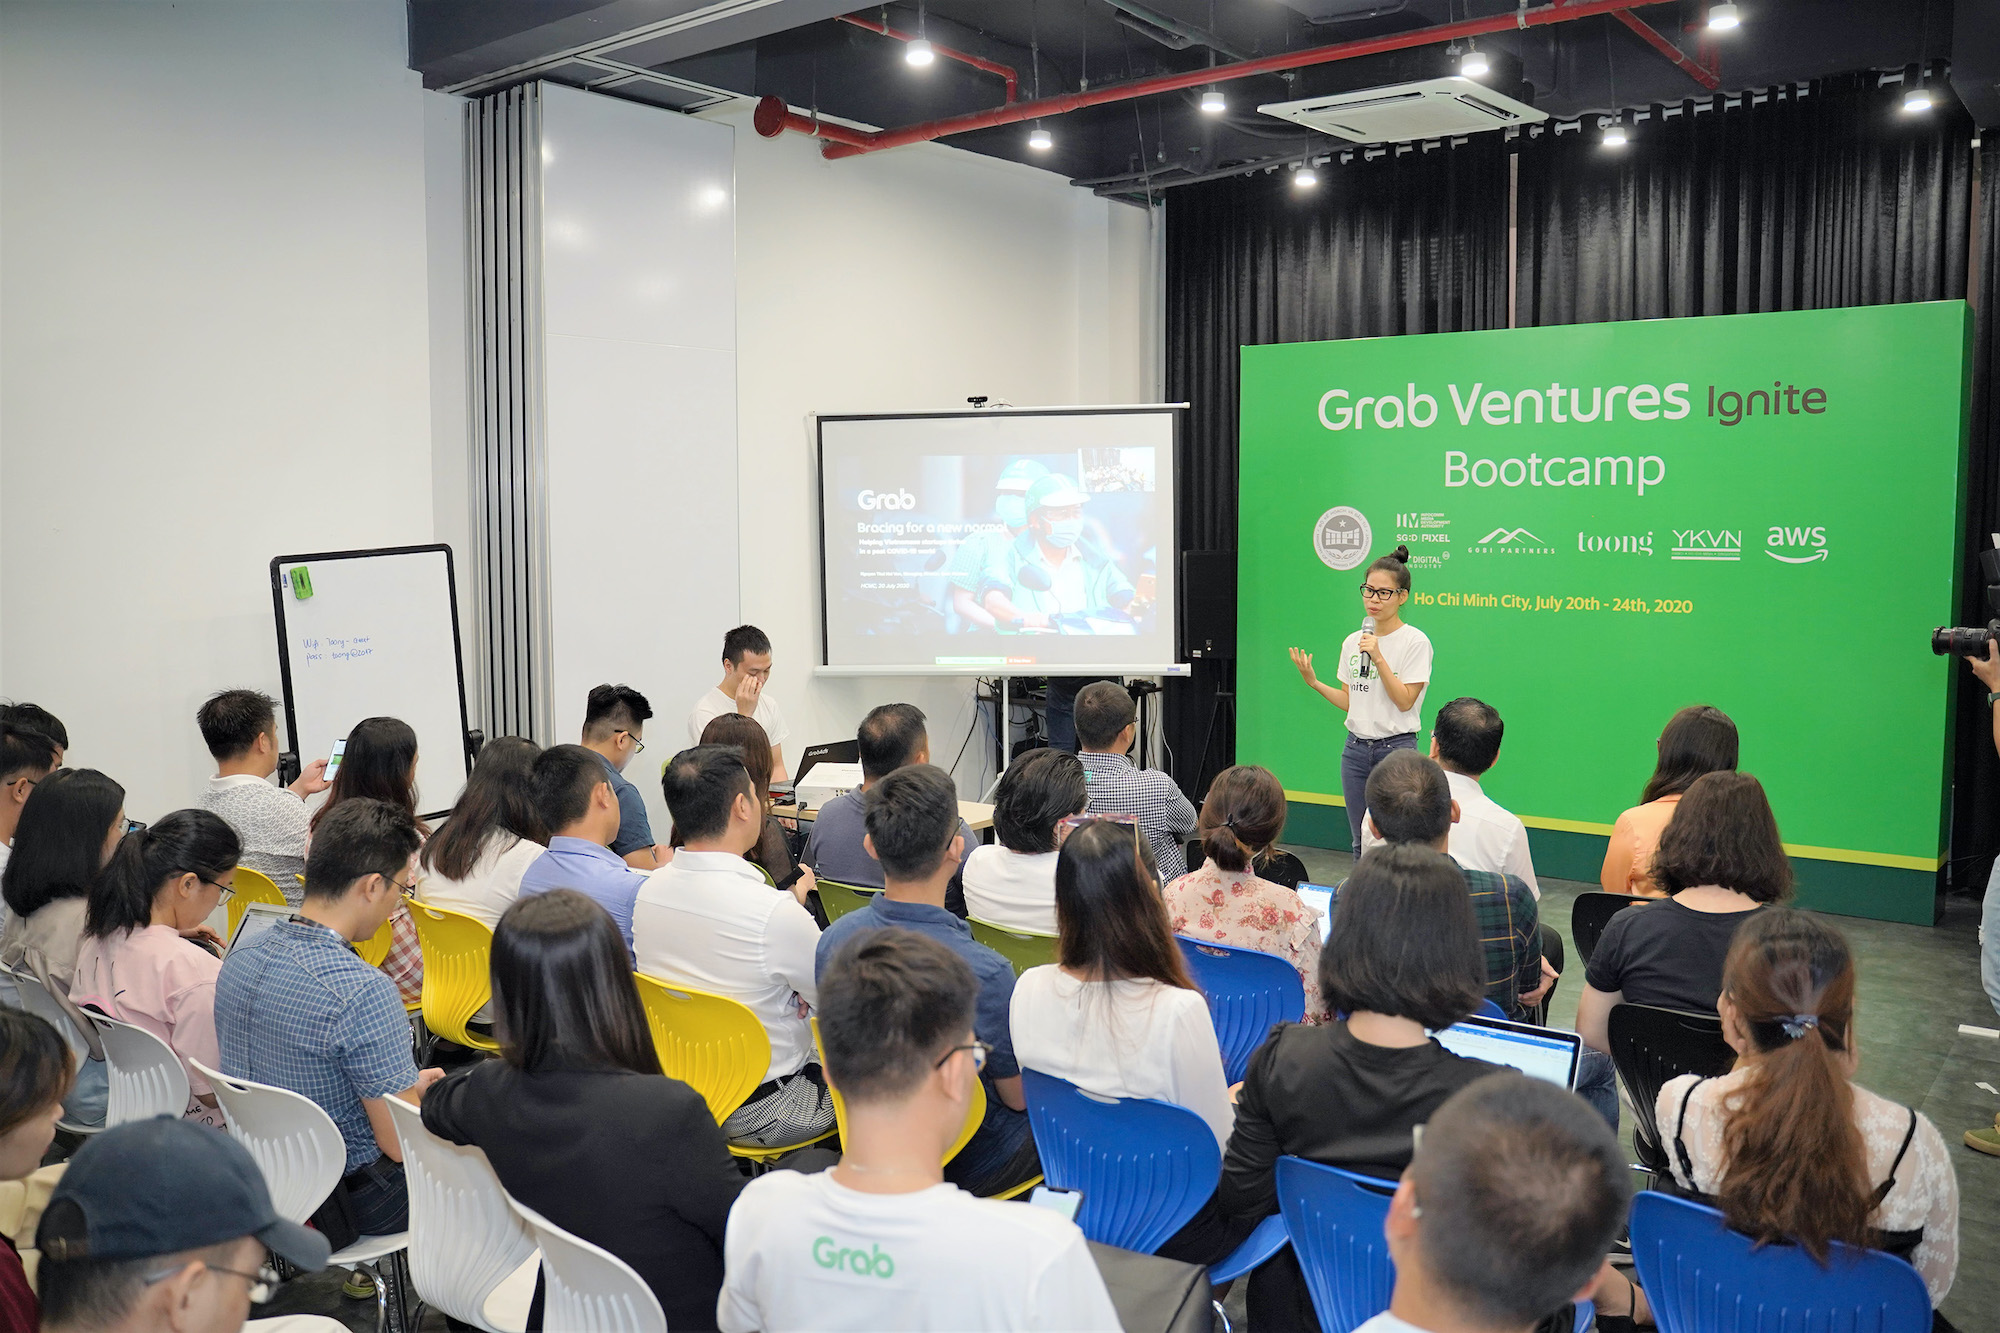 Grab chính thức khởi động chương trình Grab Ventures Ignite, góp phần thúc đẩy hệ sinh thái khởi nghiệp Việt Nam